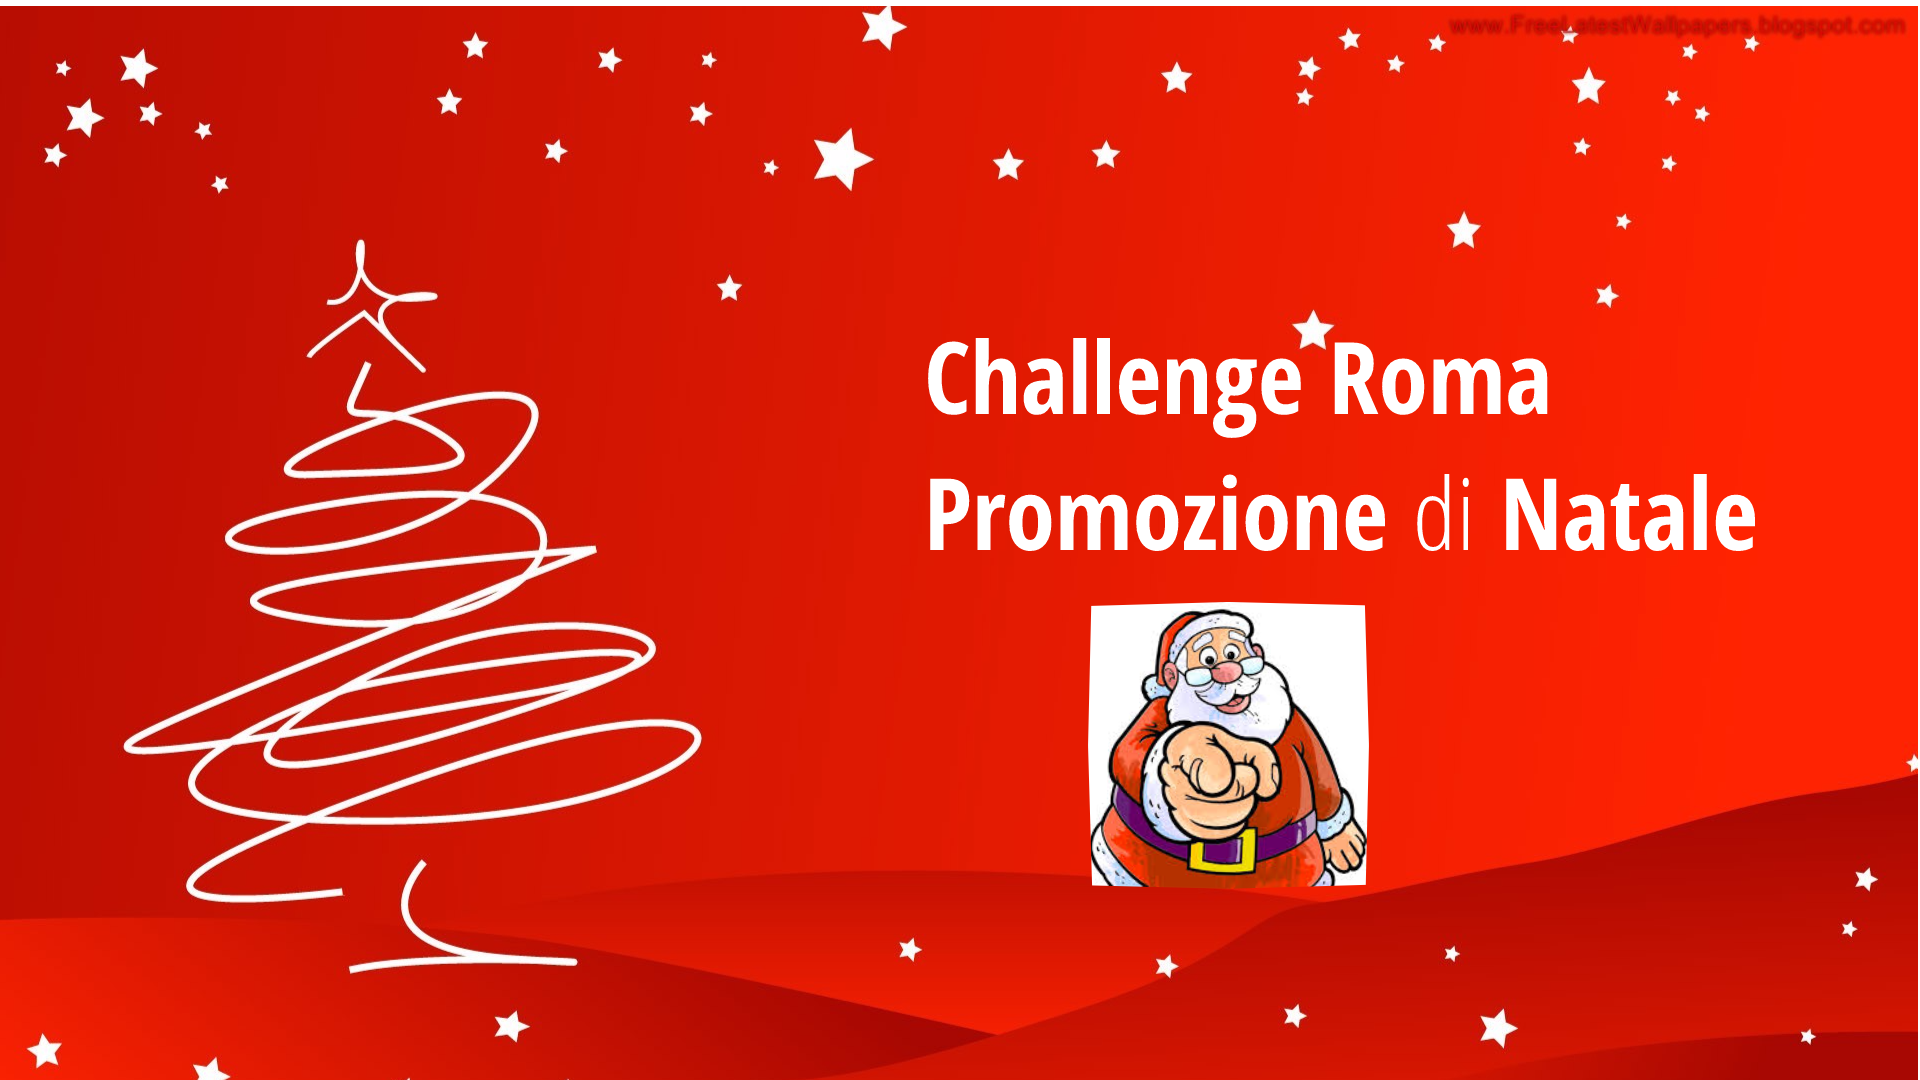 Tutto sul Challenge di Roma, le promozioni natalizie e tanto altro